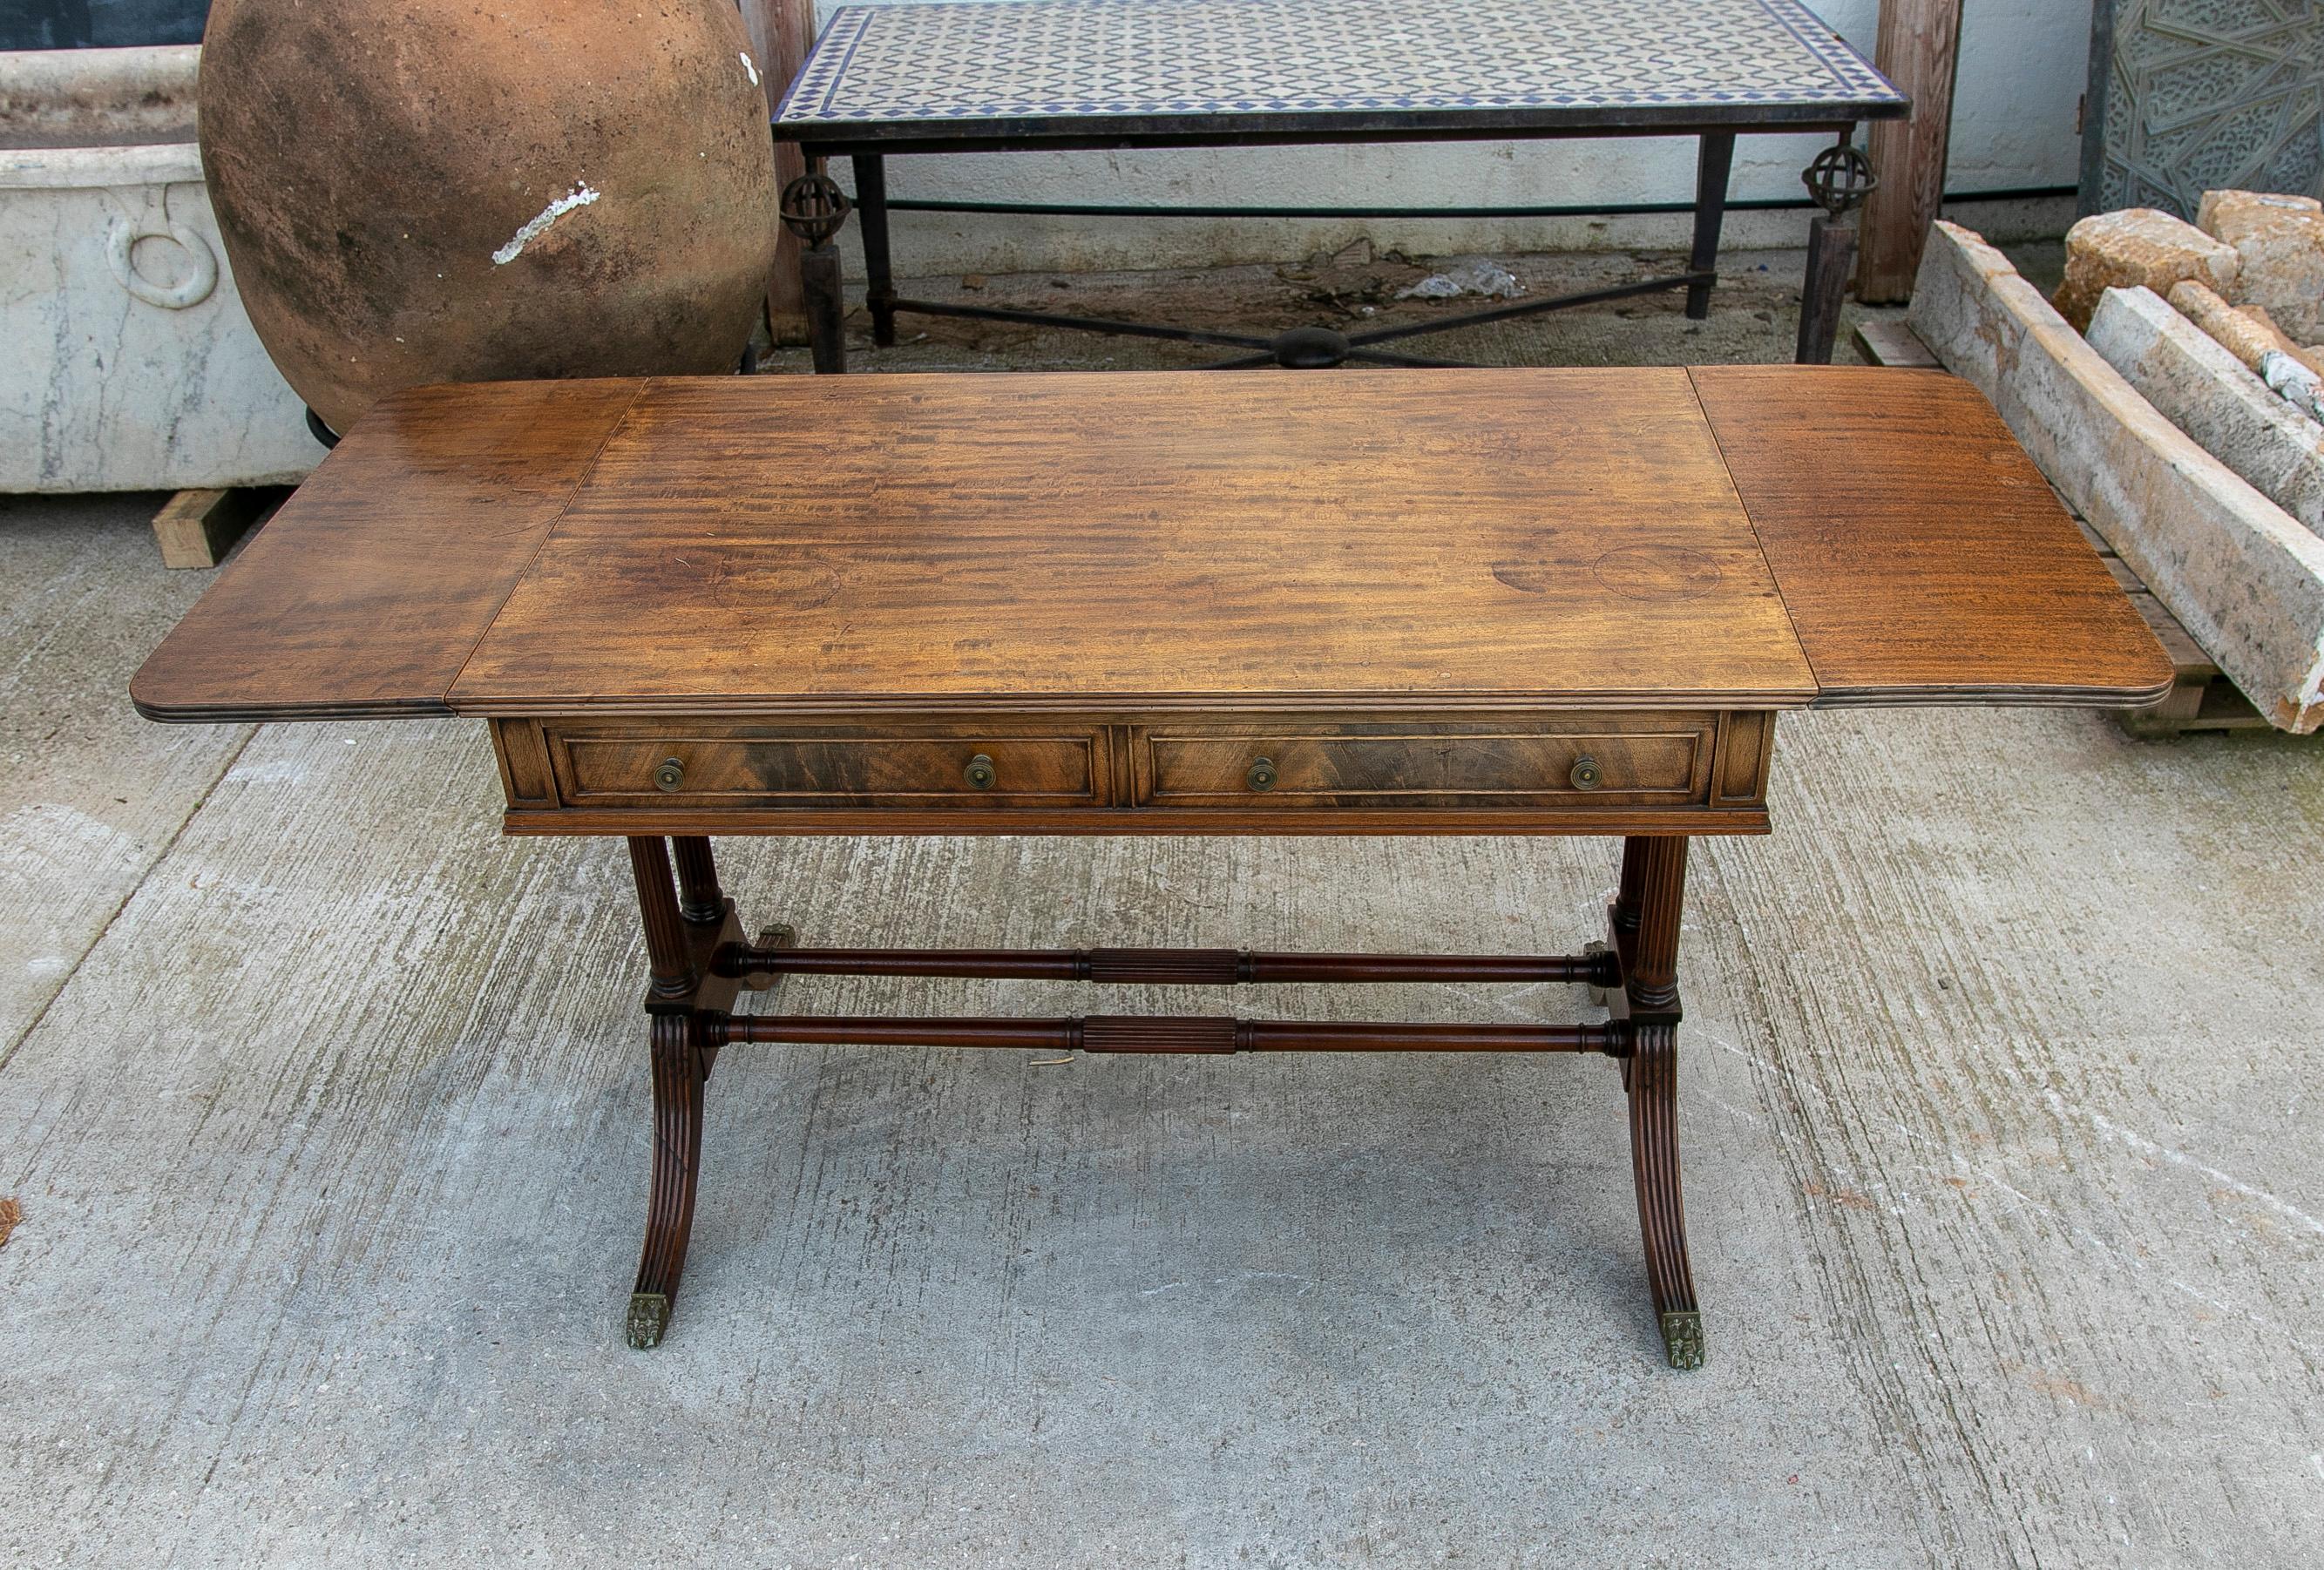 Table à écrire anglaise des années 1950 en acajou avec tiroirs et pieds avec griffes de lions en bronze.
Dimensions table ouverte : 74x165x66cm